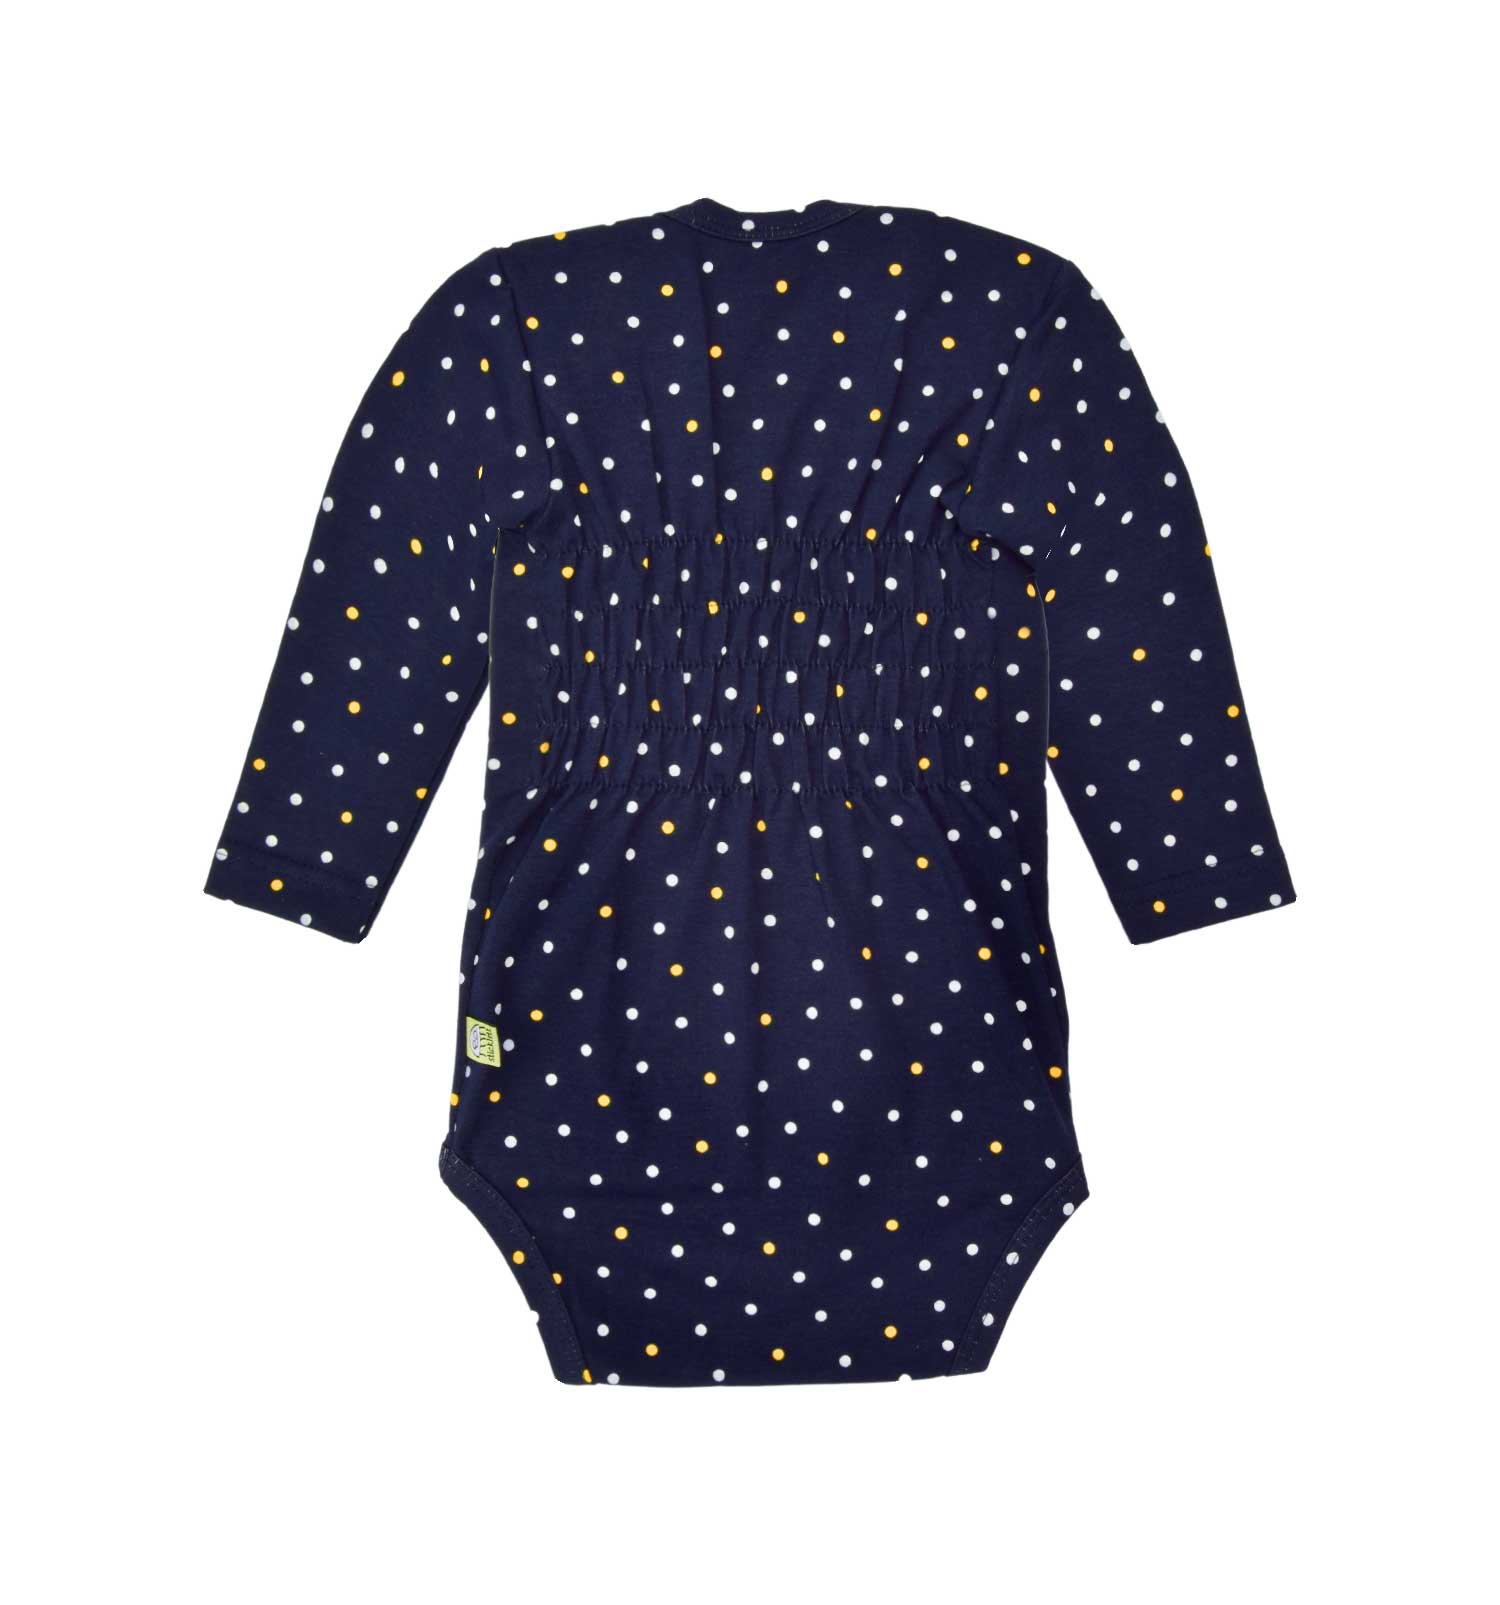 Babykleidung für Jungen und Mädchen, Baby Body in dunkelblau mit gelb-weißen Dots